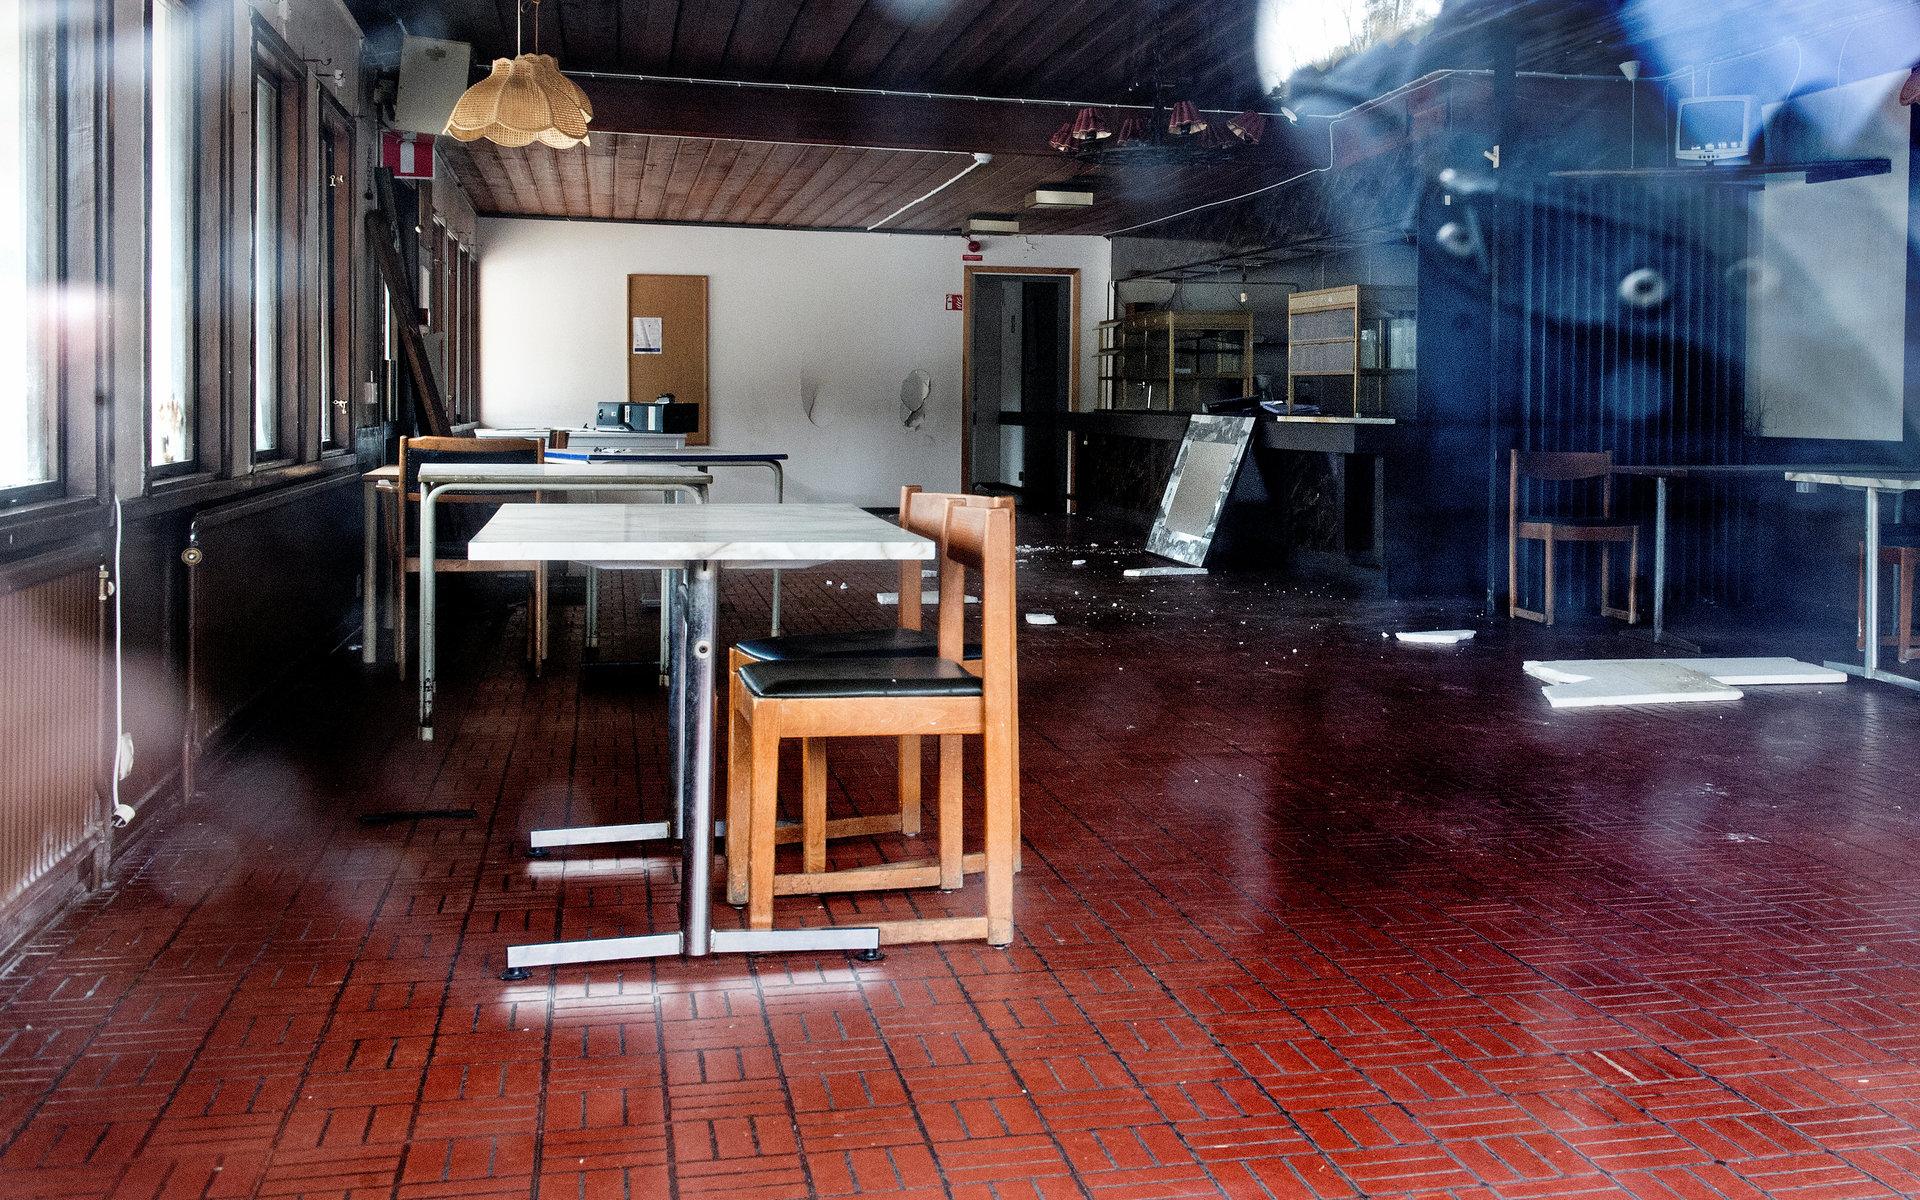 Bord och stolar står kvar i den gamla matsalen.